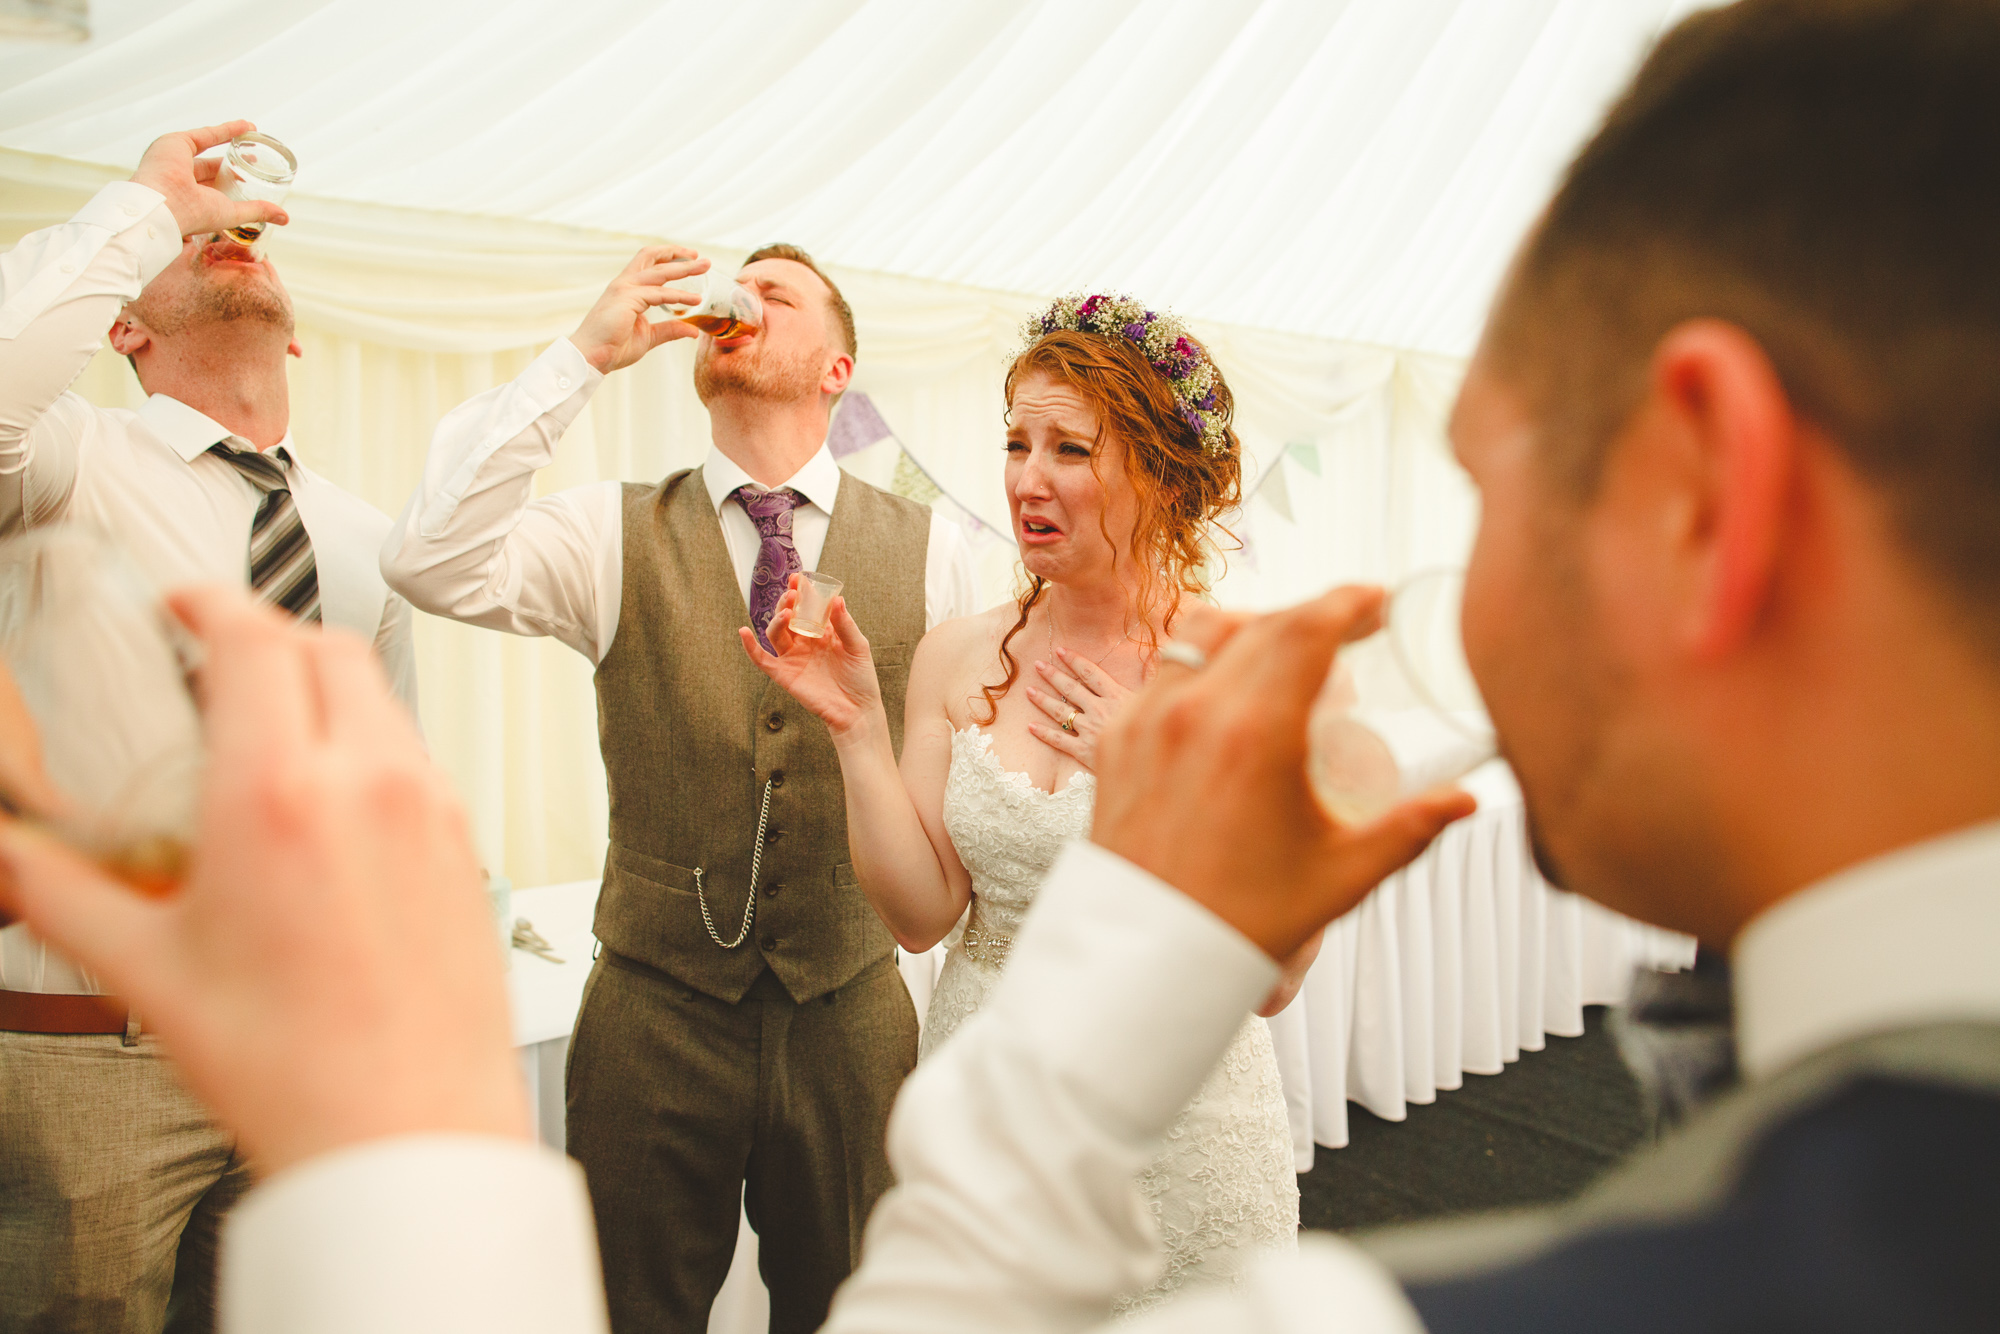 bride drinking shots, reportage wedding photo